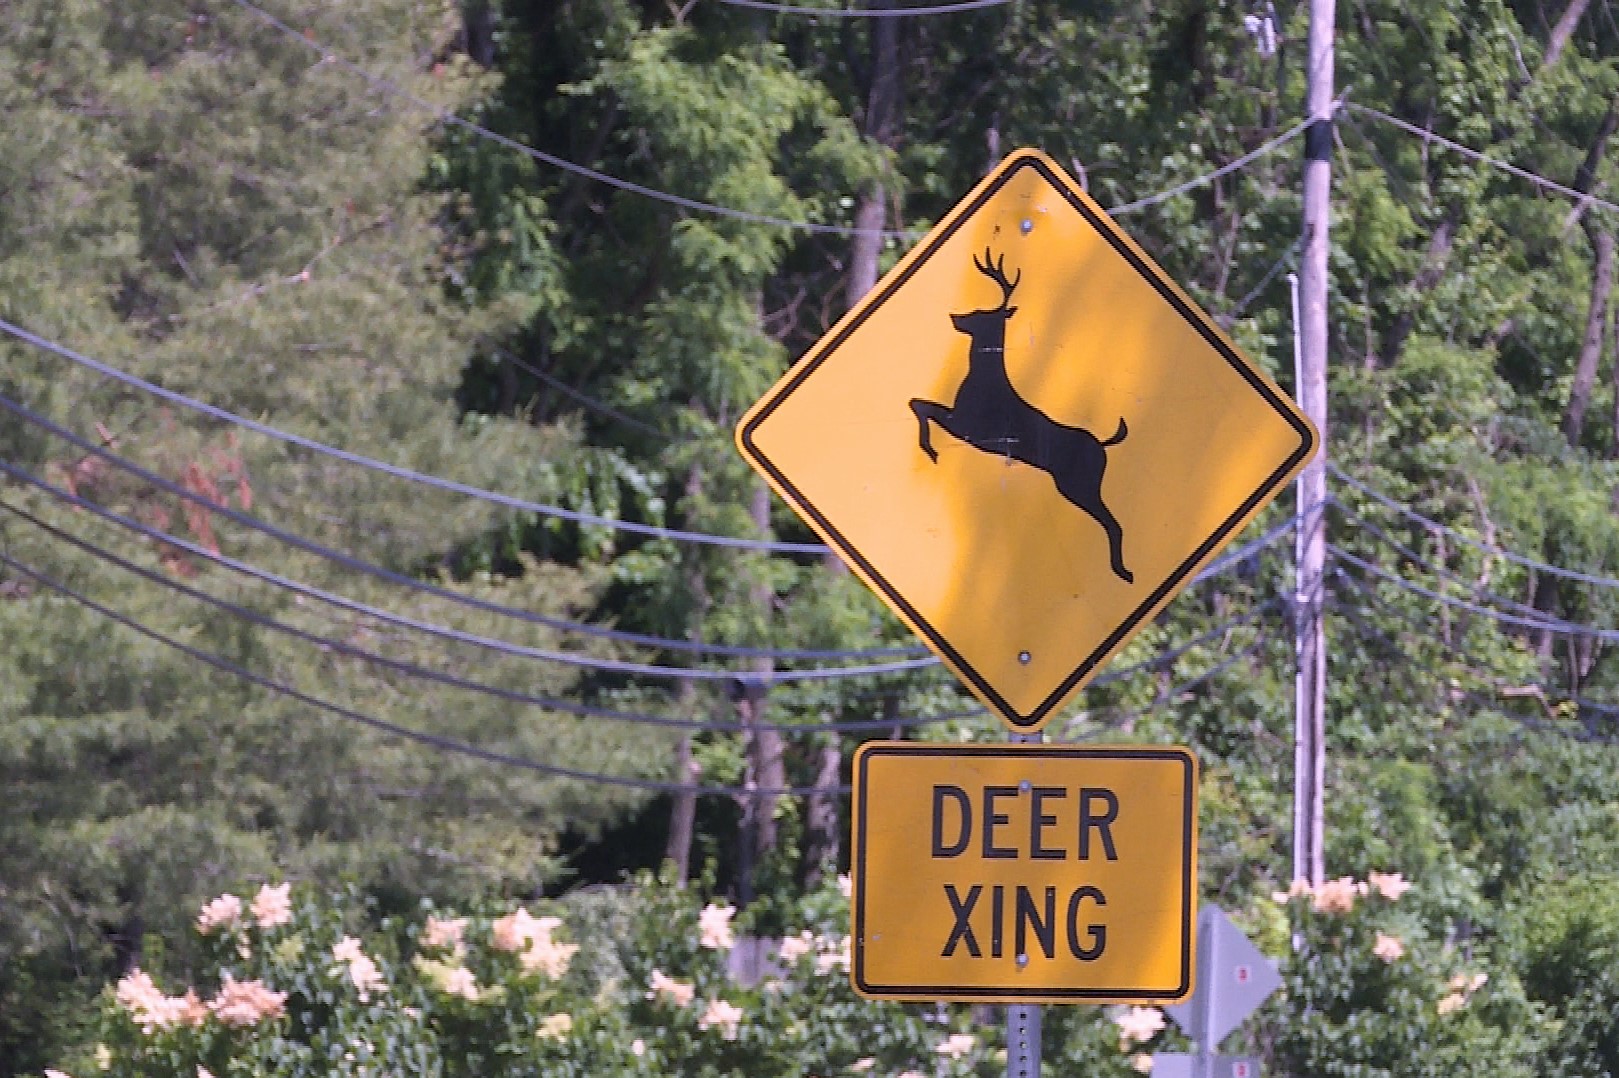 A deer crossing road sign.